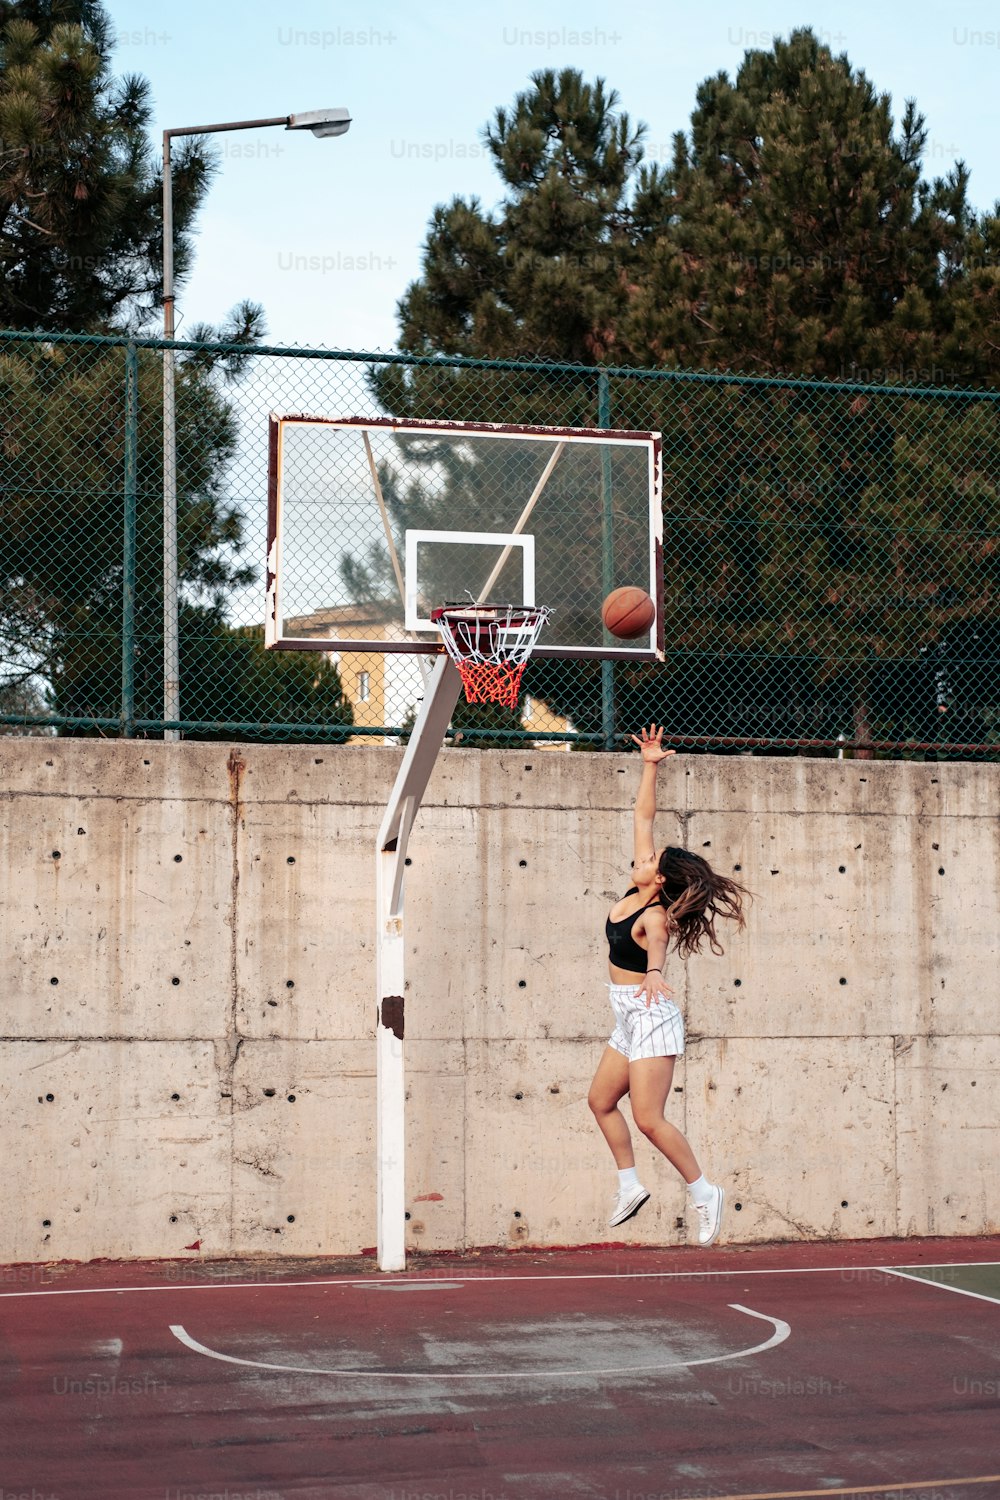 Una mujer saltando para clavar una pelota de baloncesto